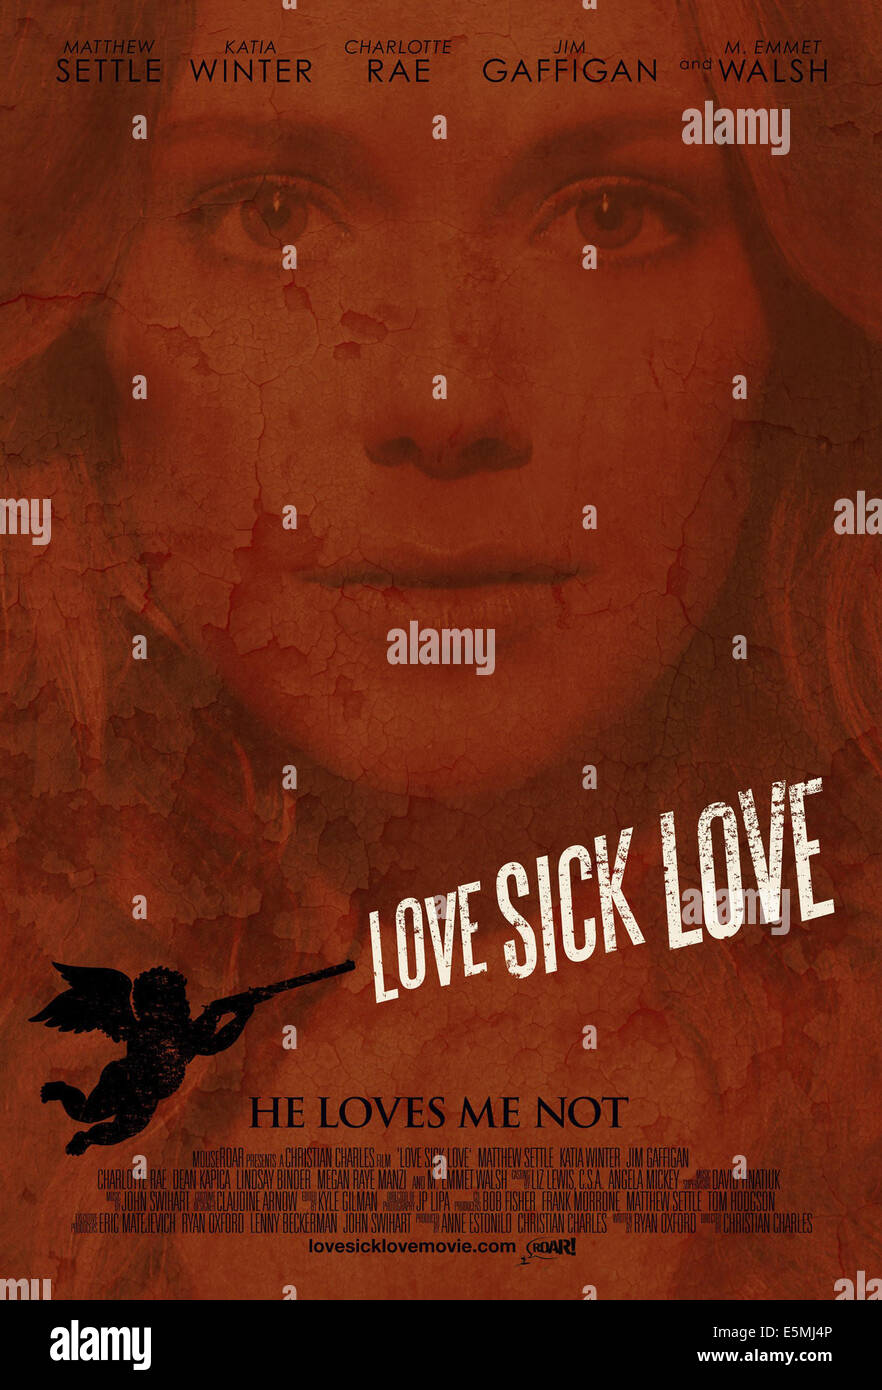 LOVE SICK, nos encanta el arte de póster, Katia Invierno, 2012. Foto de stock